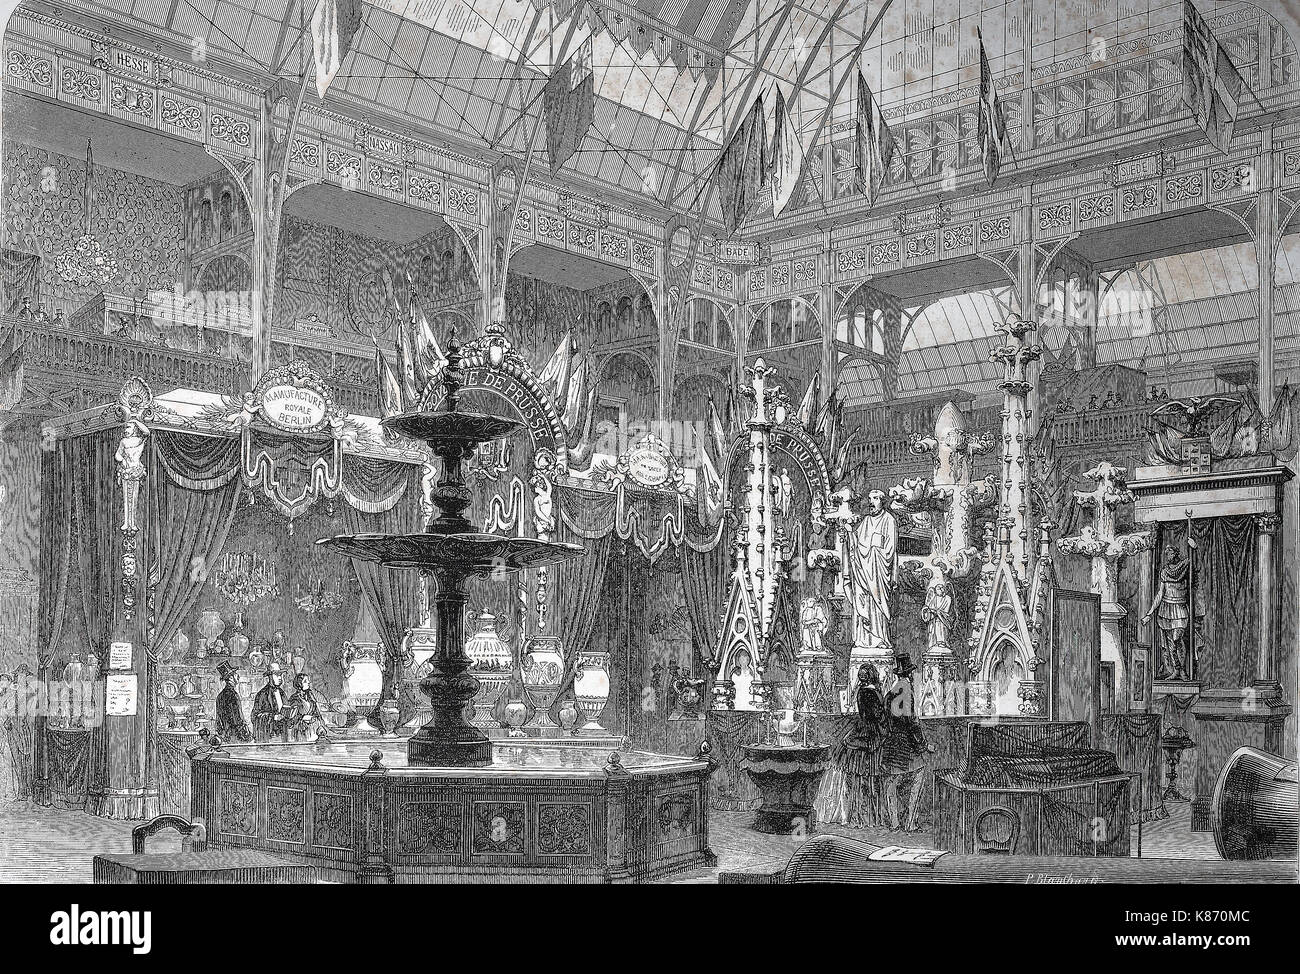 Die internationale Ausstellung 1867, Paris, Frankreich, die preußische Ausstellungshalle, Digital verbesserte Reproduktion einer Vorlage woodprint aus dem 19. Jahrhundert Stockfoto